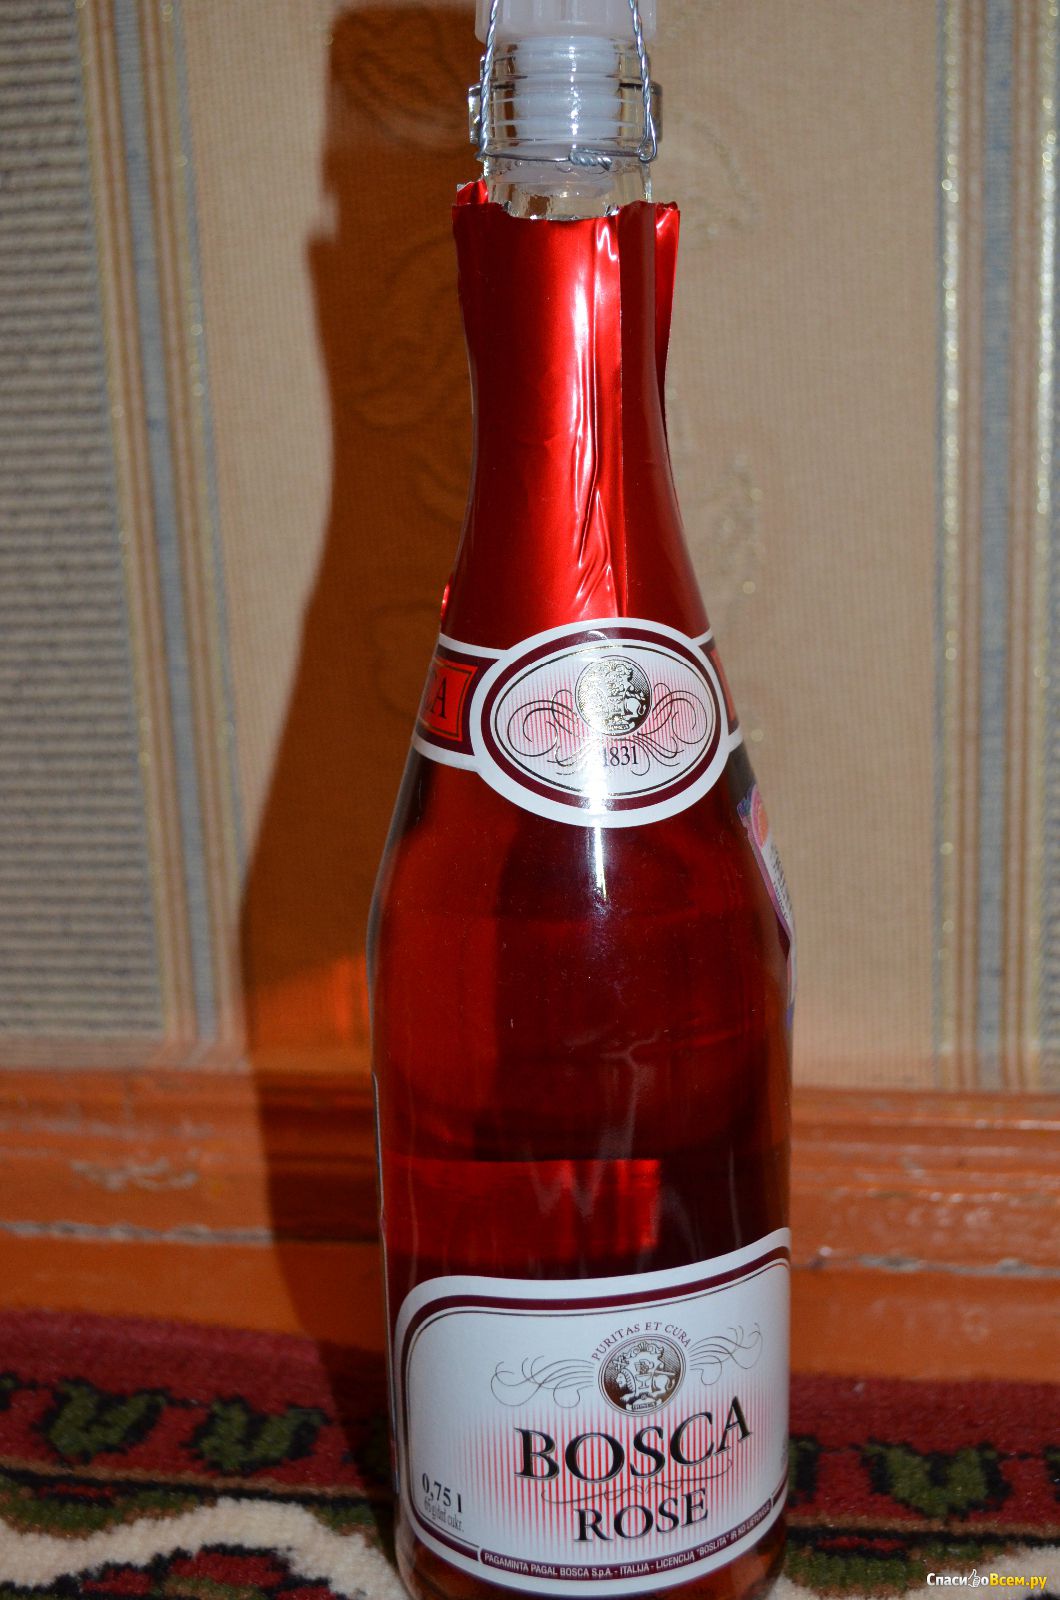 Боско напиток. Винный напиток Bosca Боско. Винный напиток "Bosca" Rose. Винный напиток Bosca Rose 0.75. Розовое шампанское Bosca Rose.